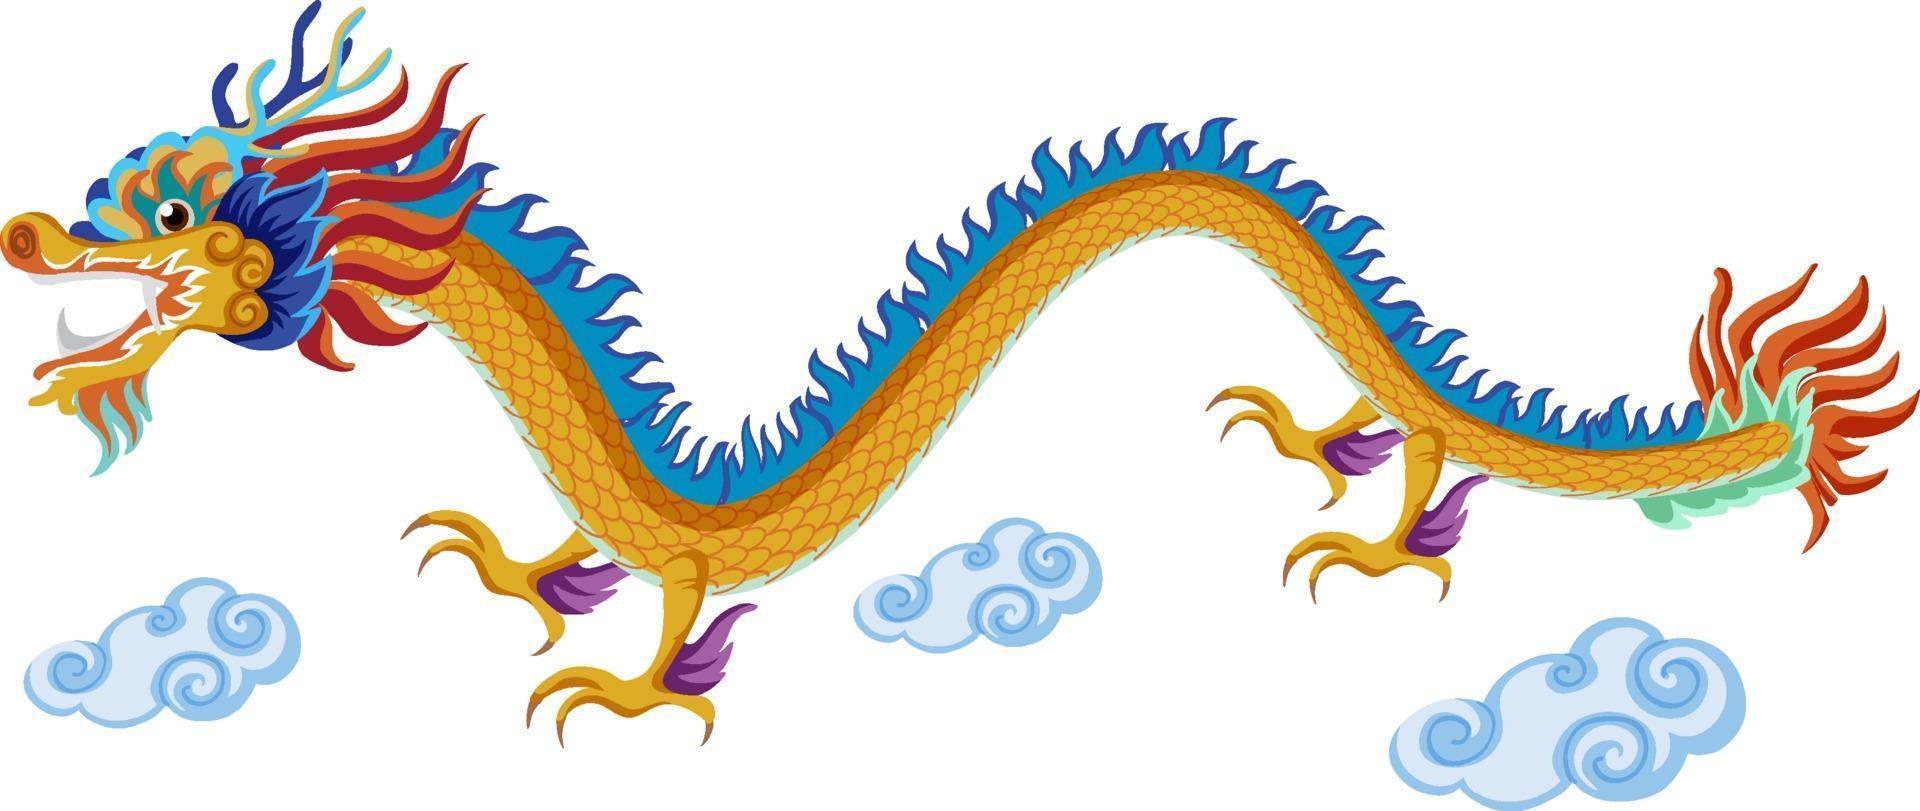 chinesischer drache fliegt über wolken isoliert auf weißem hintergrund vektor